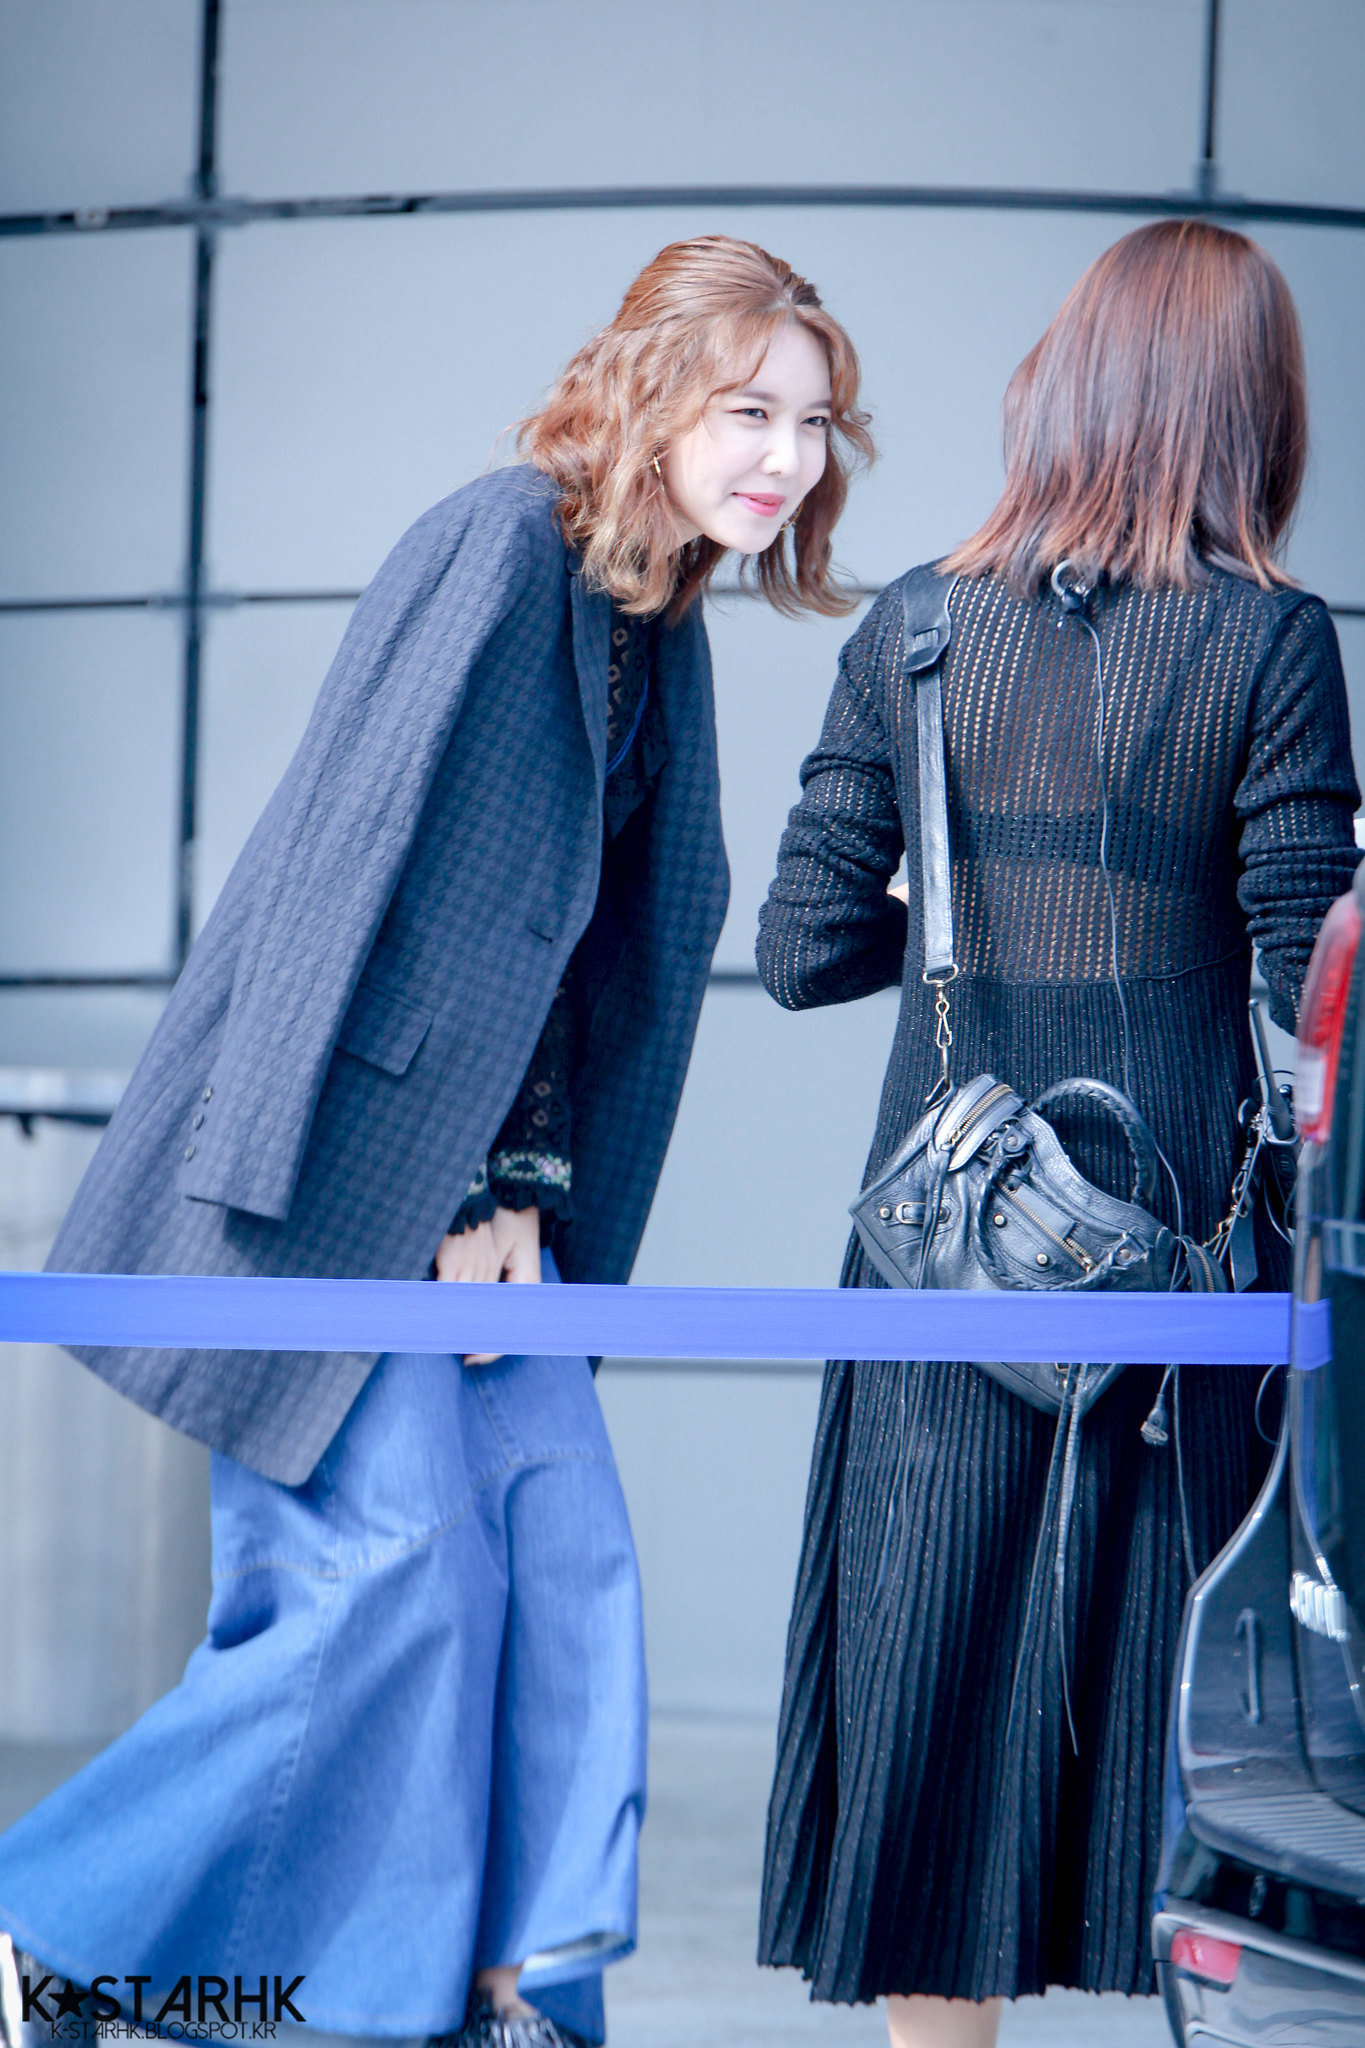 [PIC][19-10-2016]SooYoung tham dự sự kiện ra mắt BST Xuân - Hè của thương hiệu "JAIN SONG" trong khuôn khổ "2017 S/S HERA Seoul Fashion Week" vào hôm nay 35296655550_a7e1c80bf3_k